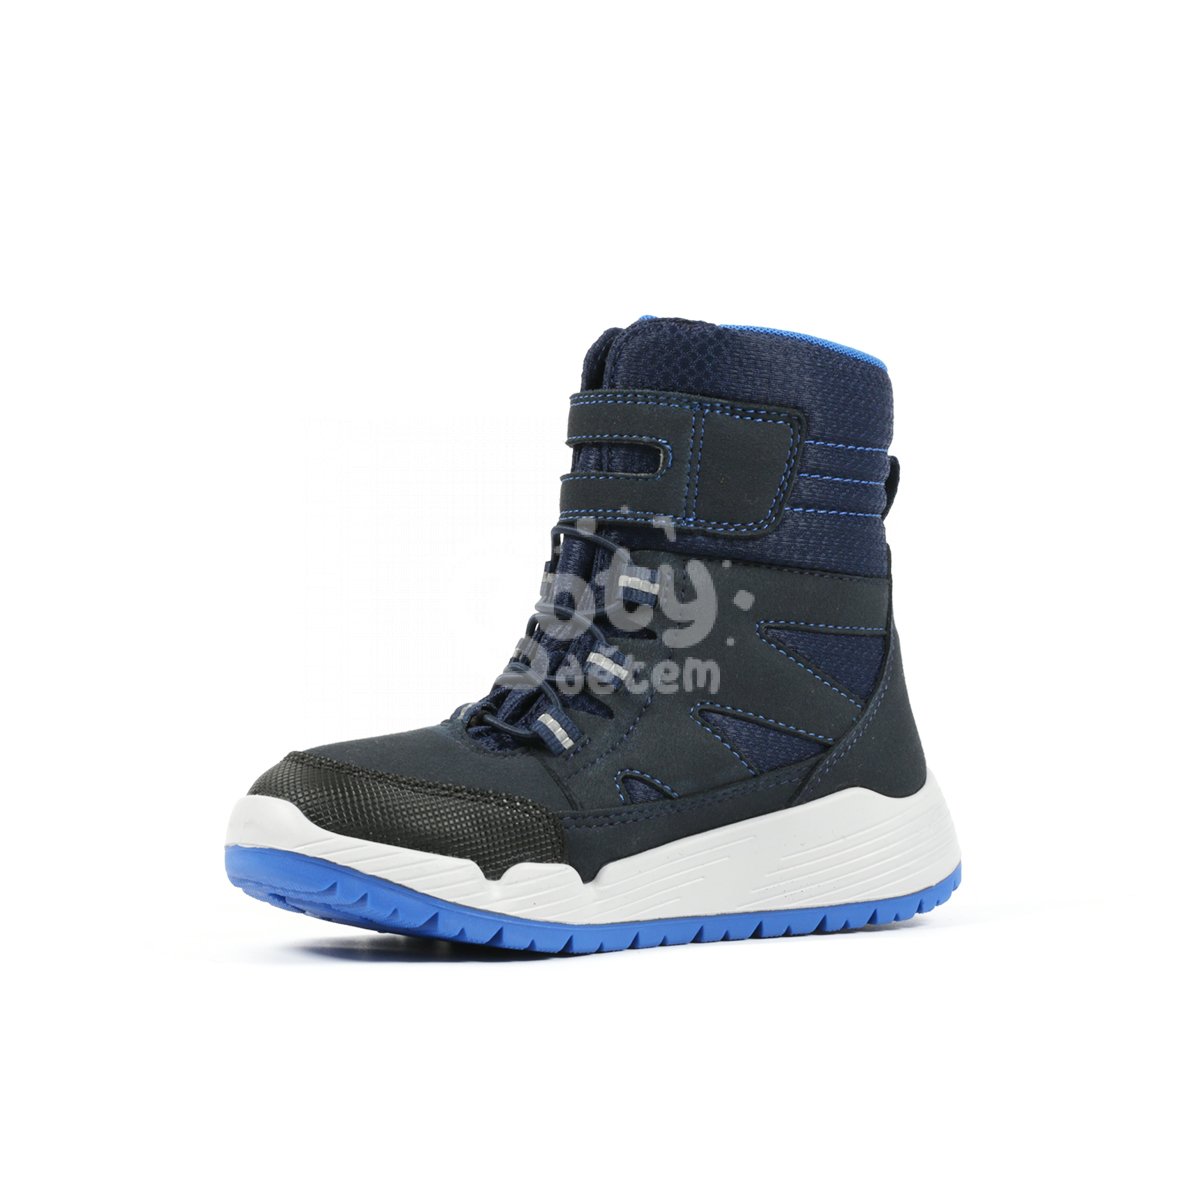 Zimní obuv Richter 6356-4191-7200 modrá